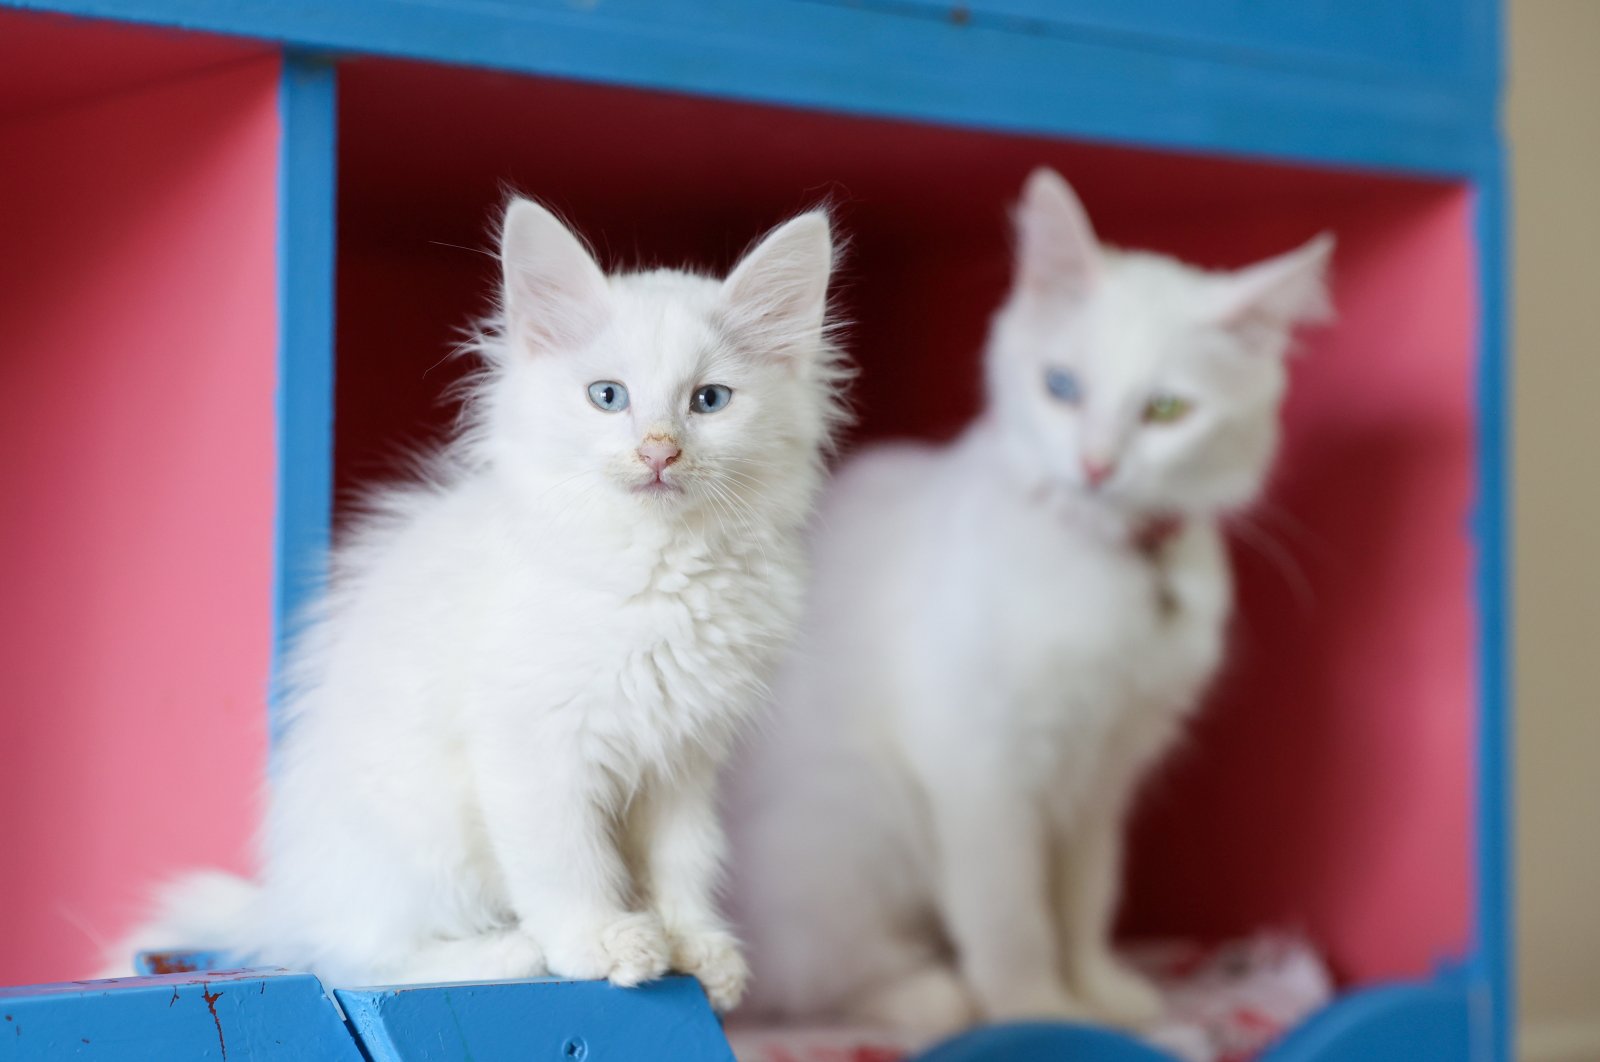 Pusat penelitian Turki menempatkan ratusan kucing Van untuk diadopsi